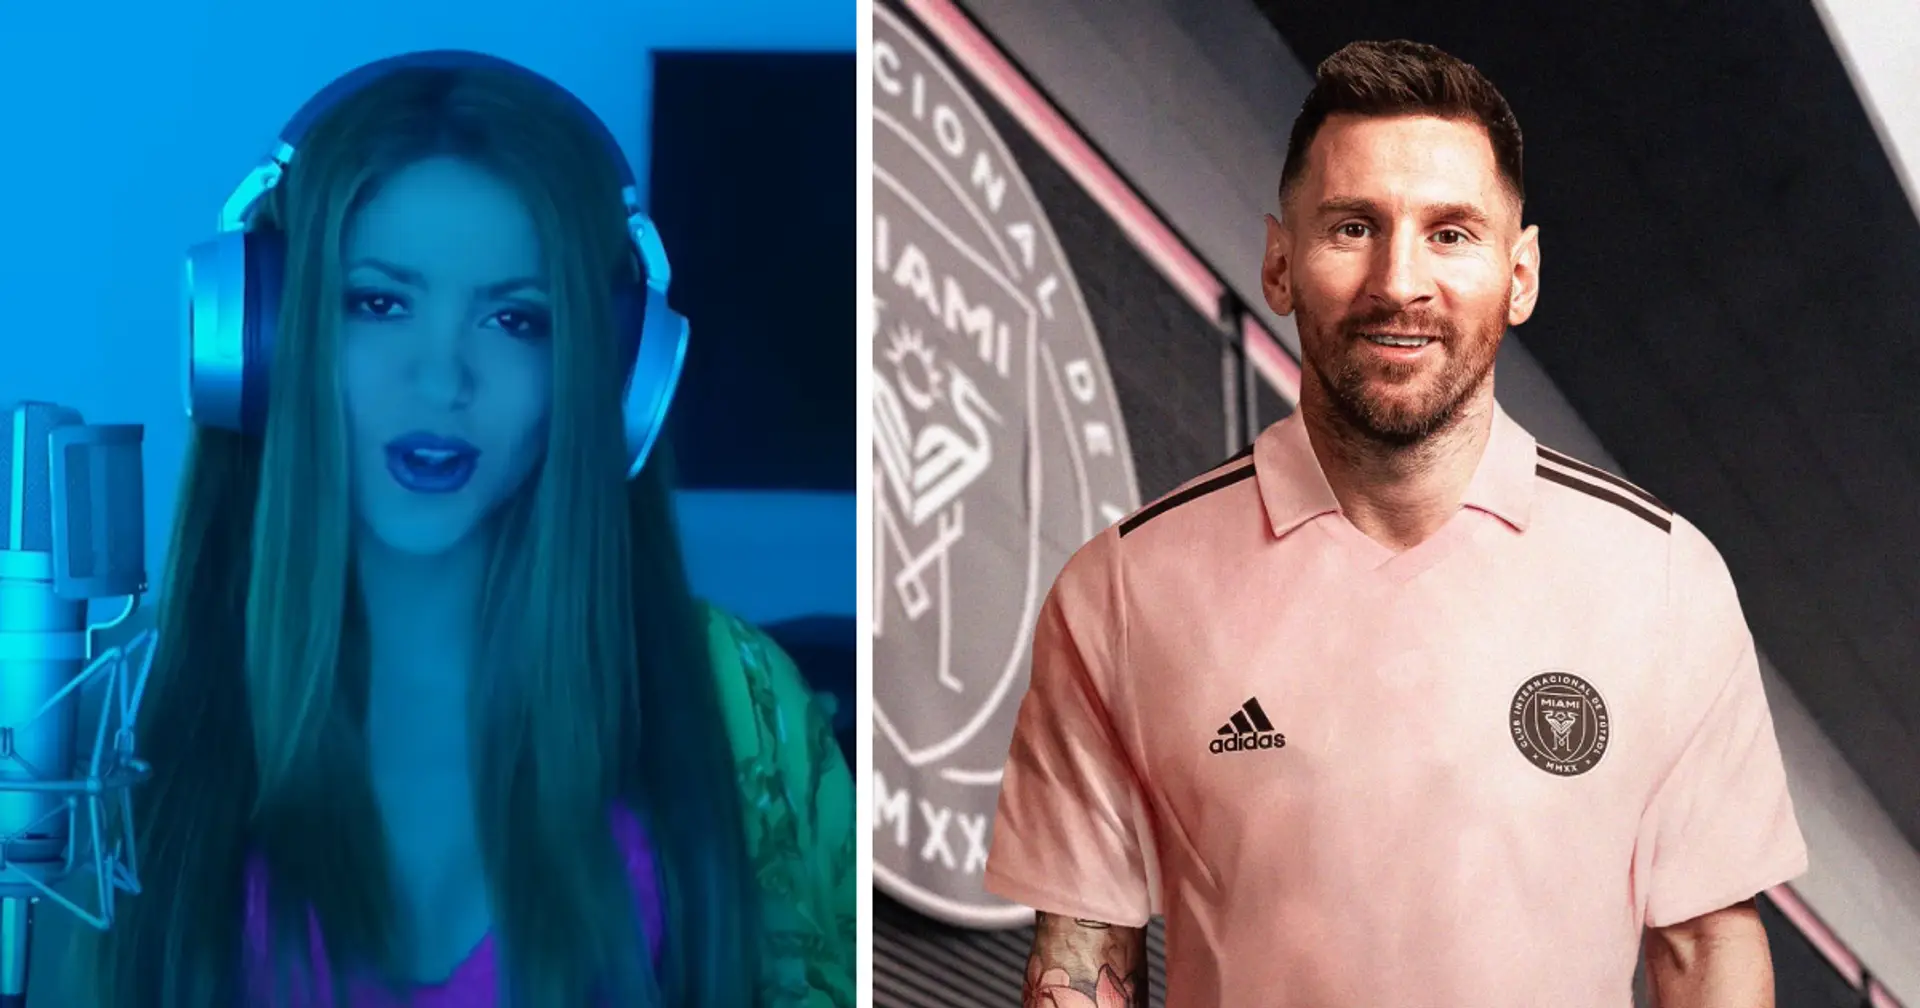 Inter Miami will einige der berühmtesten Musiker der Welt für die Vorstellung von Lionel Messi engagieren